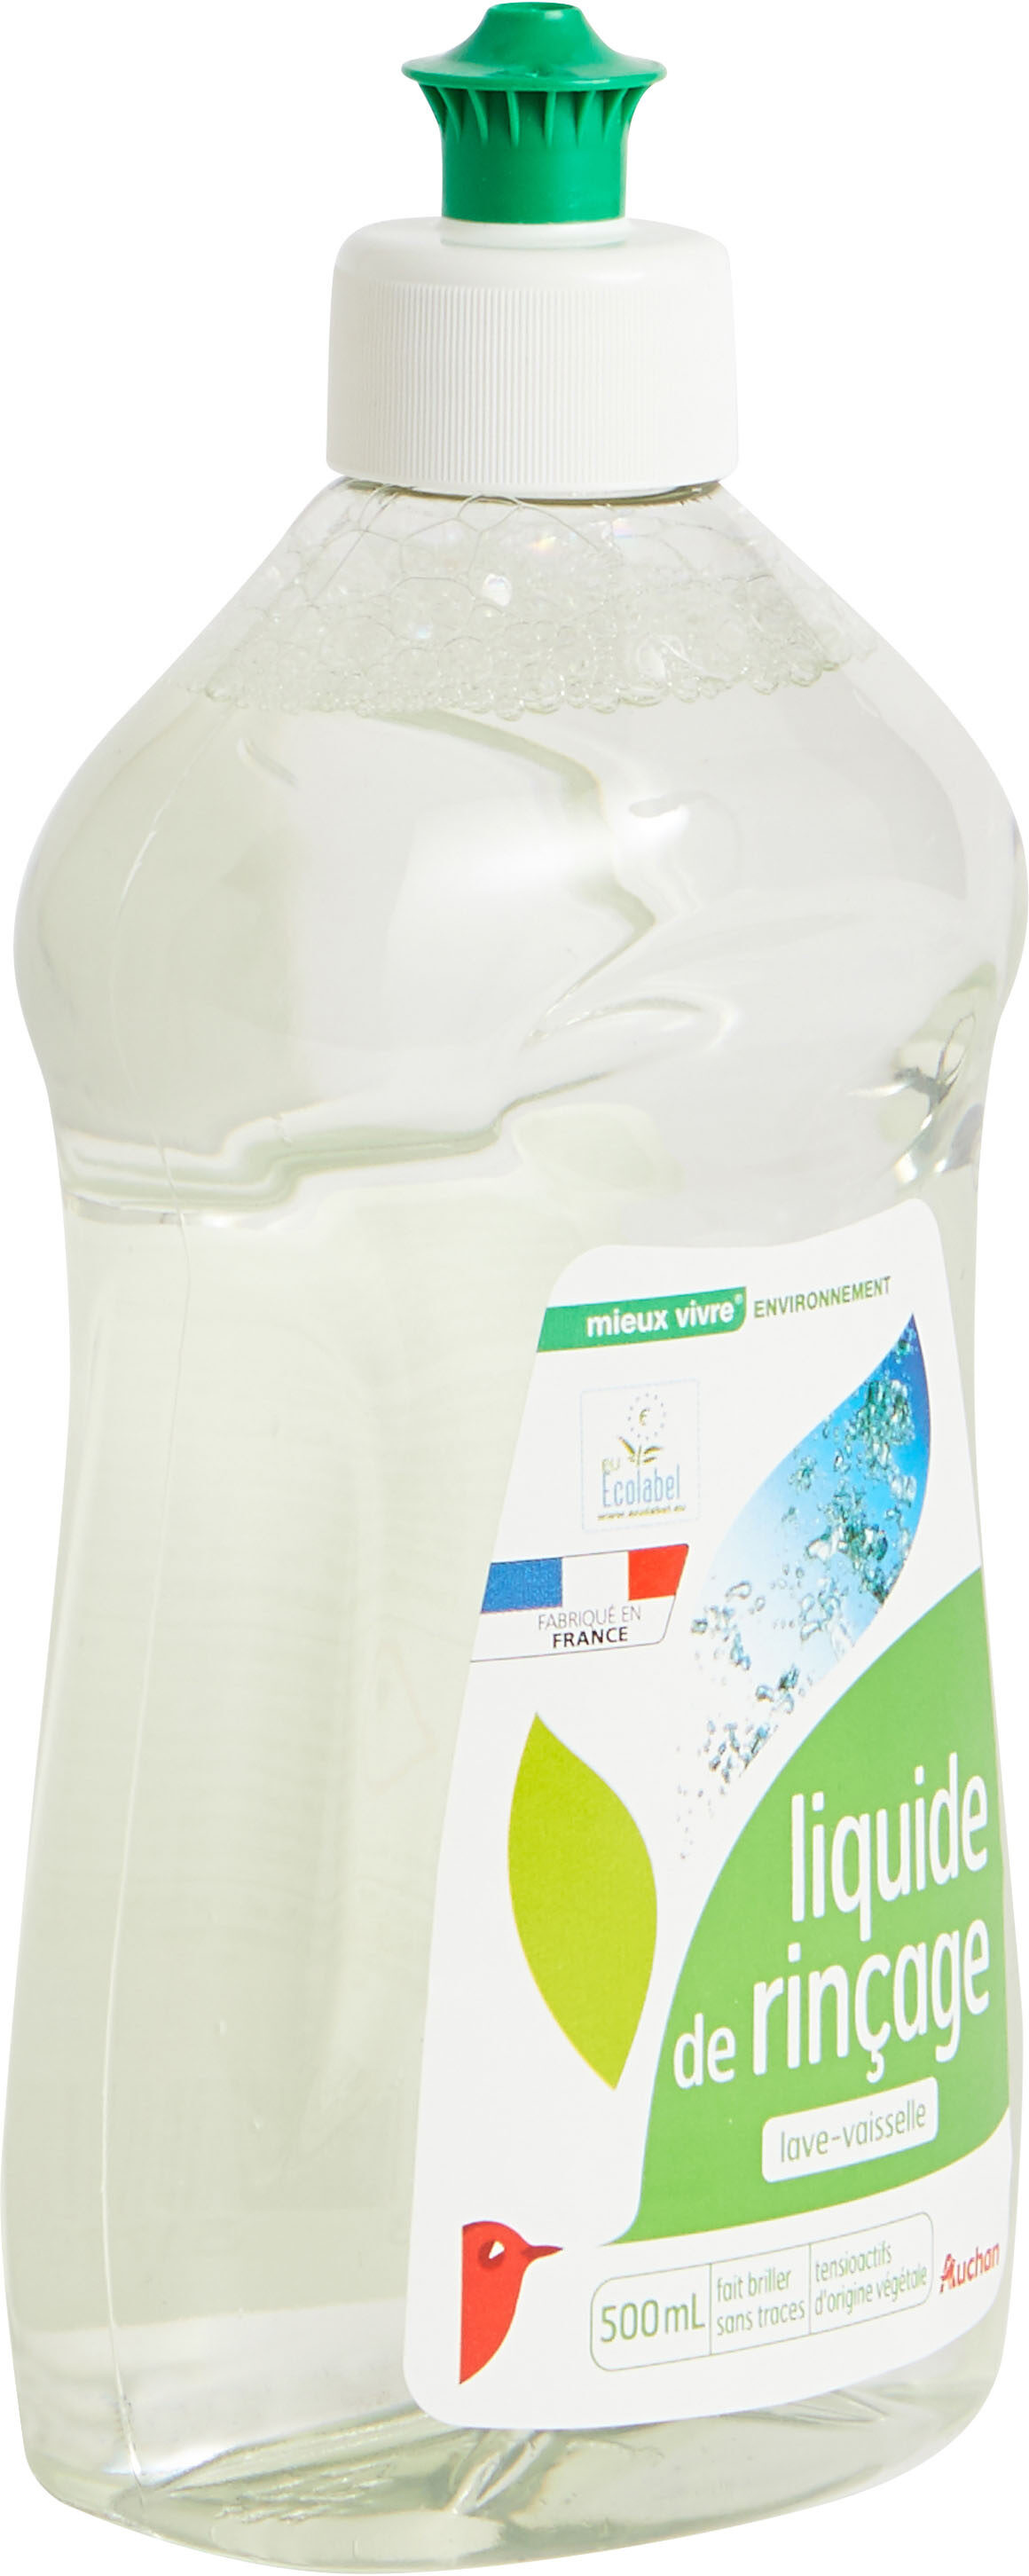 Auchan liquide de rincage lave-vaisselle eco 500ml - Produit - fr